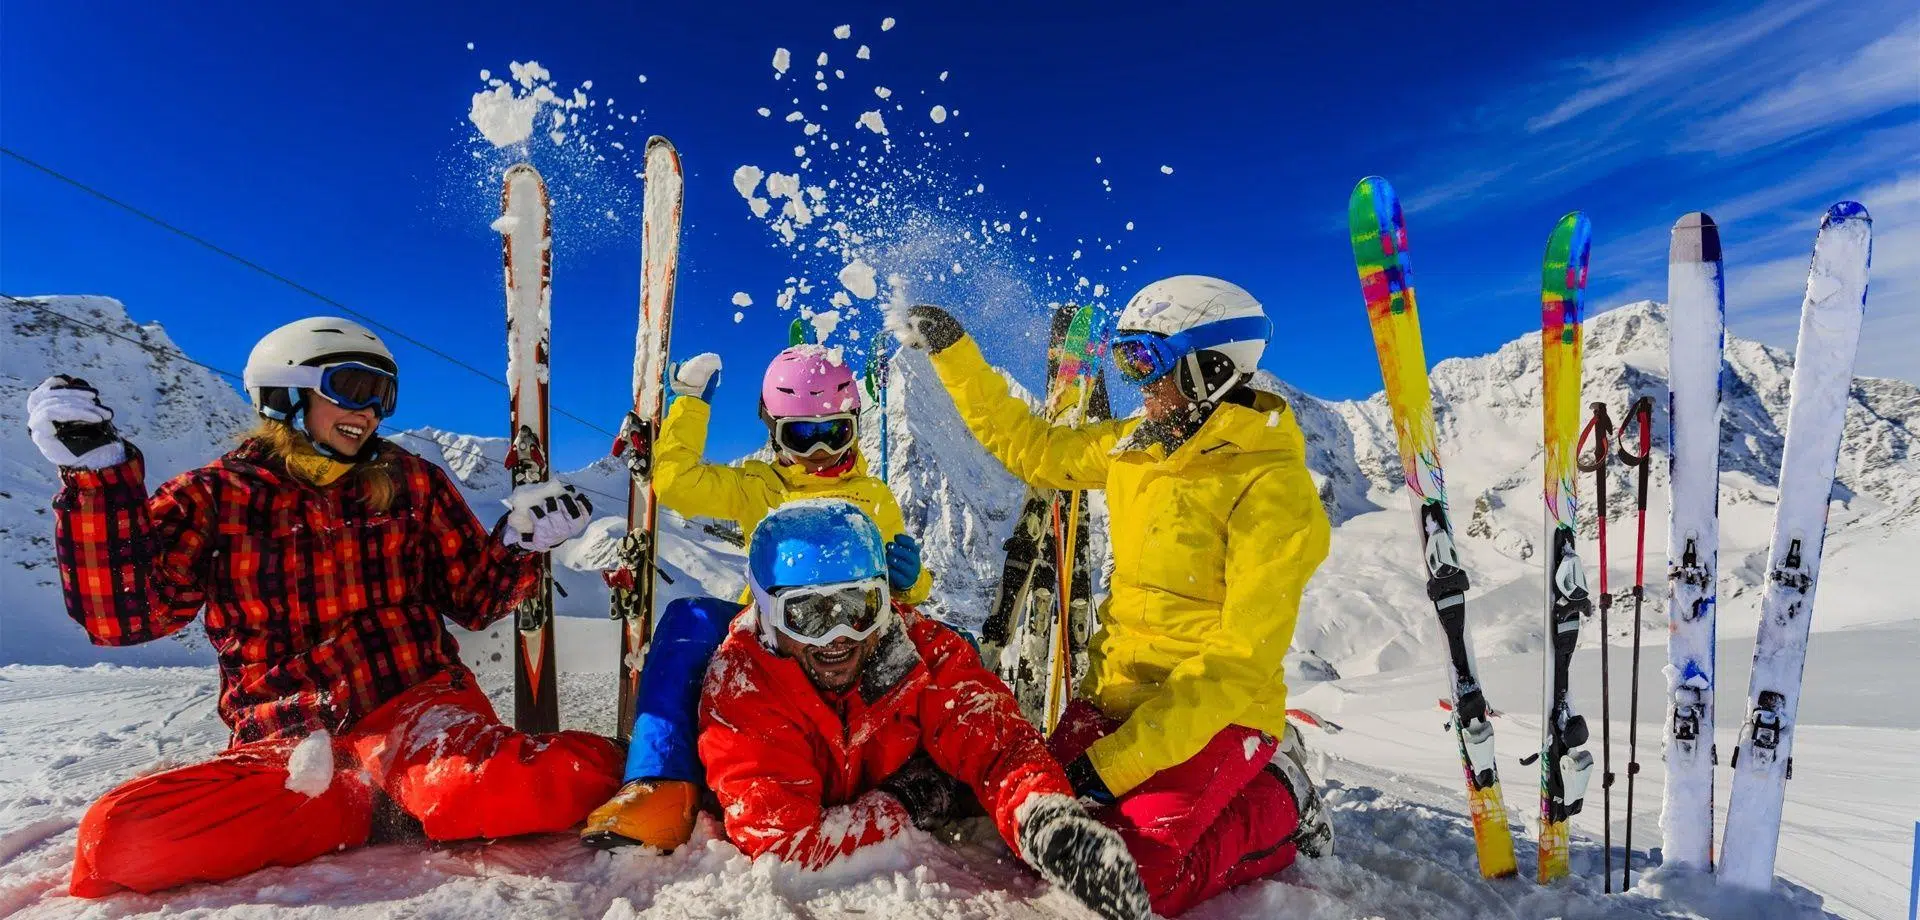 Le bonheur de passer des vacances au ski